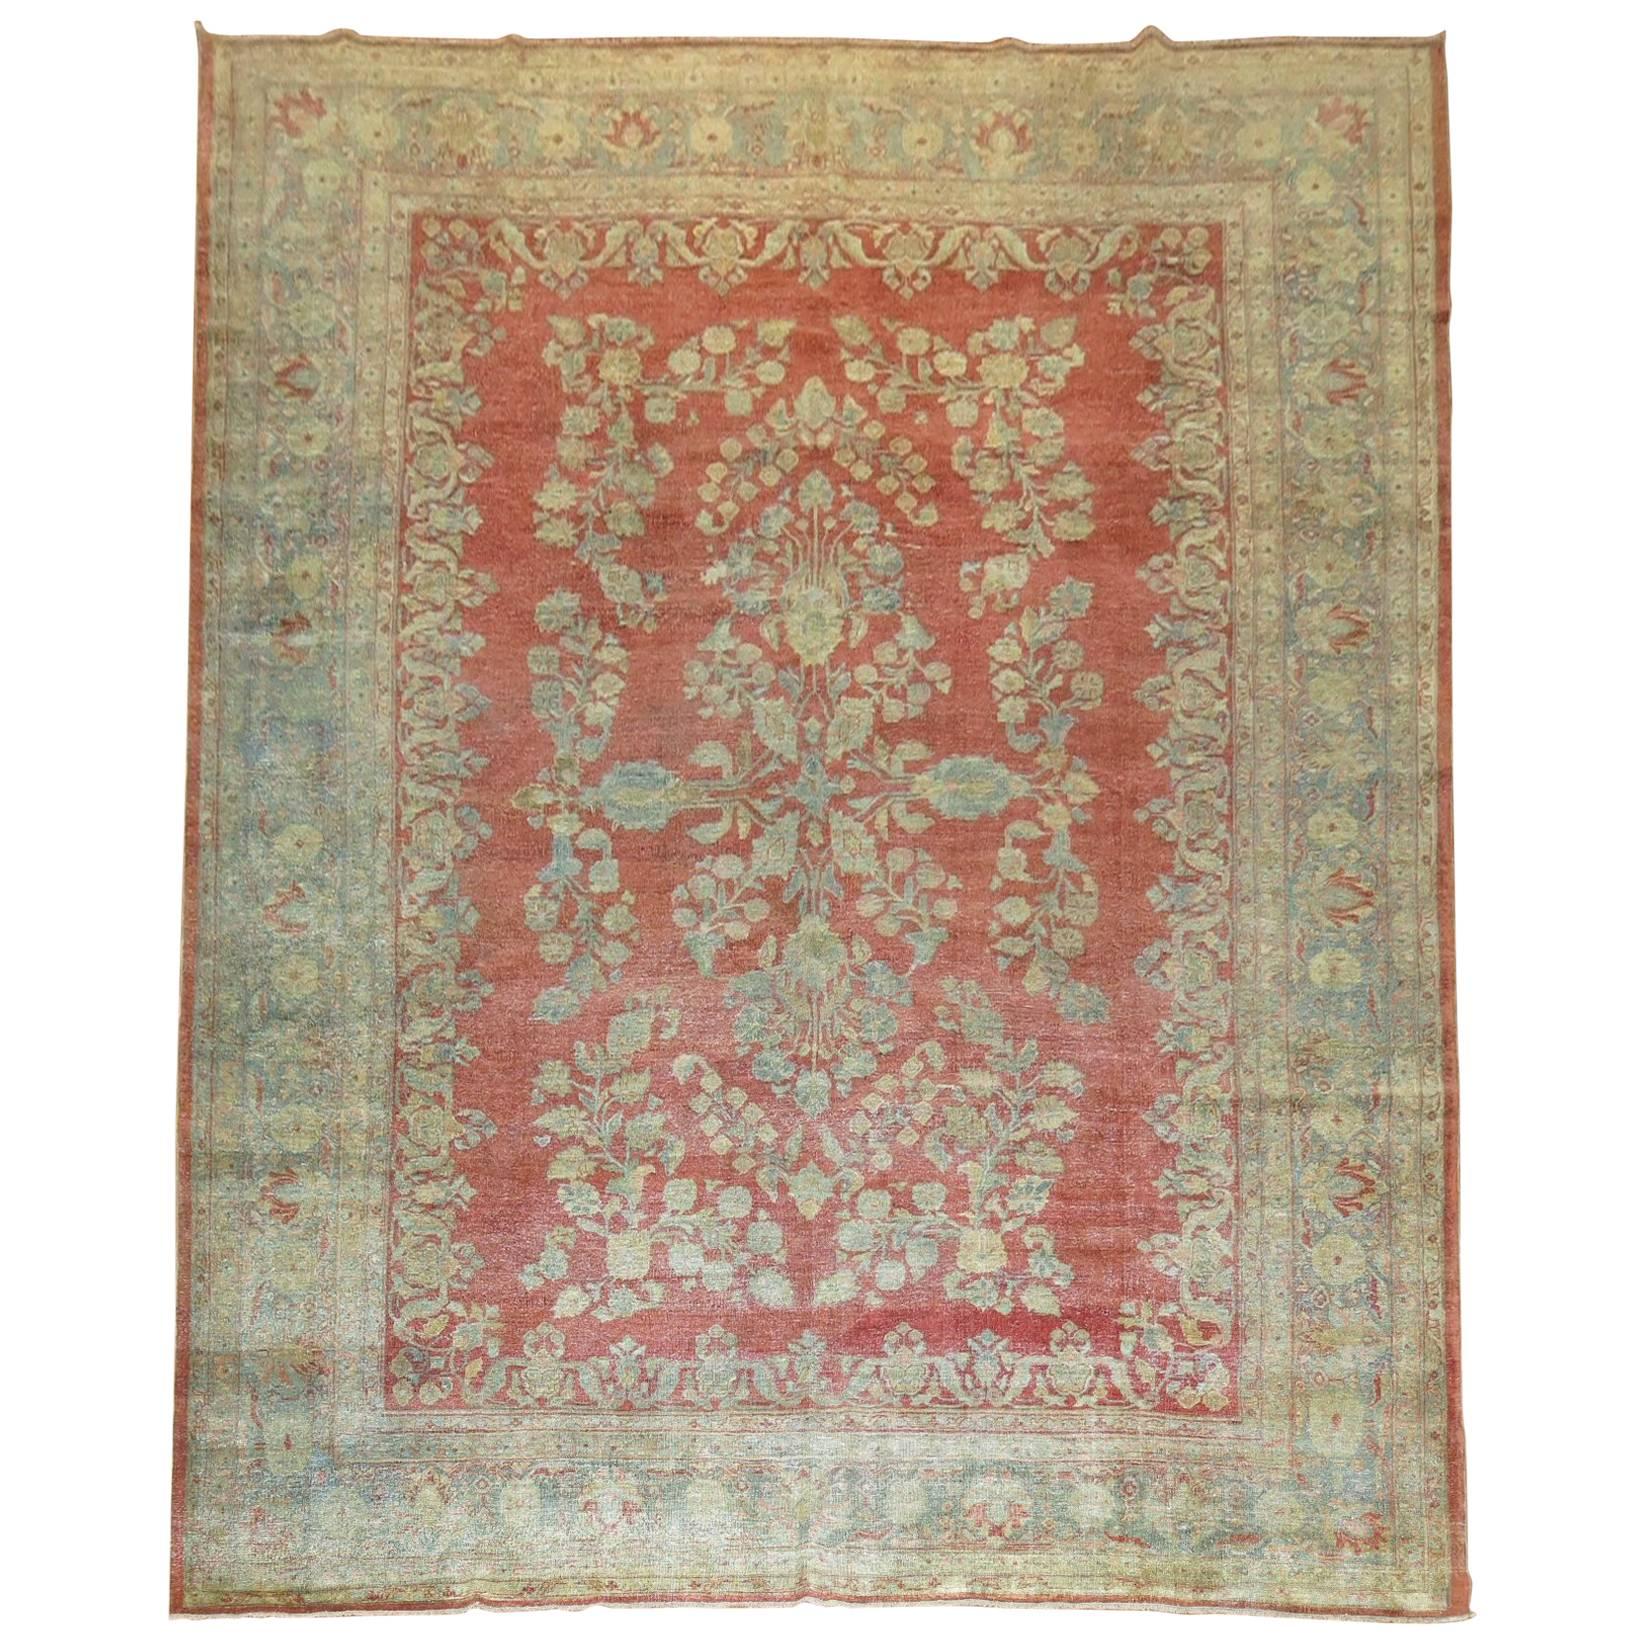 Decorative Persian Sarouk Carpet